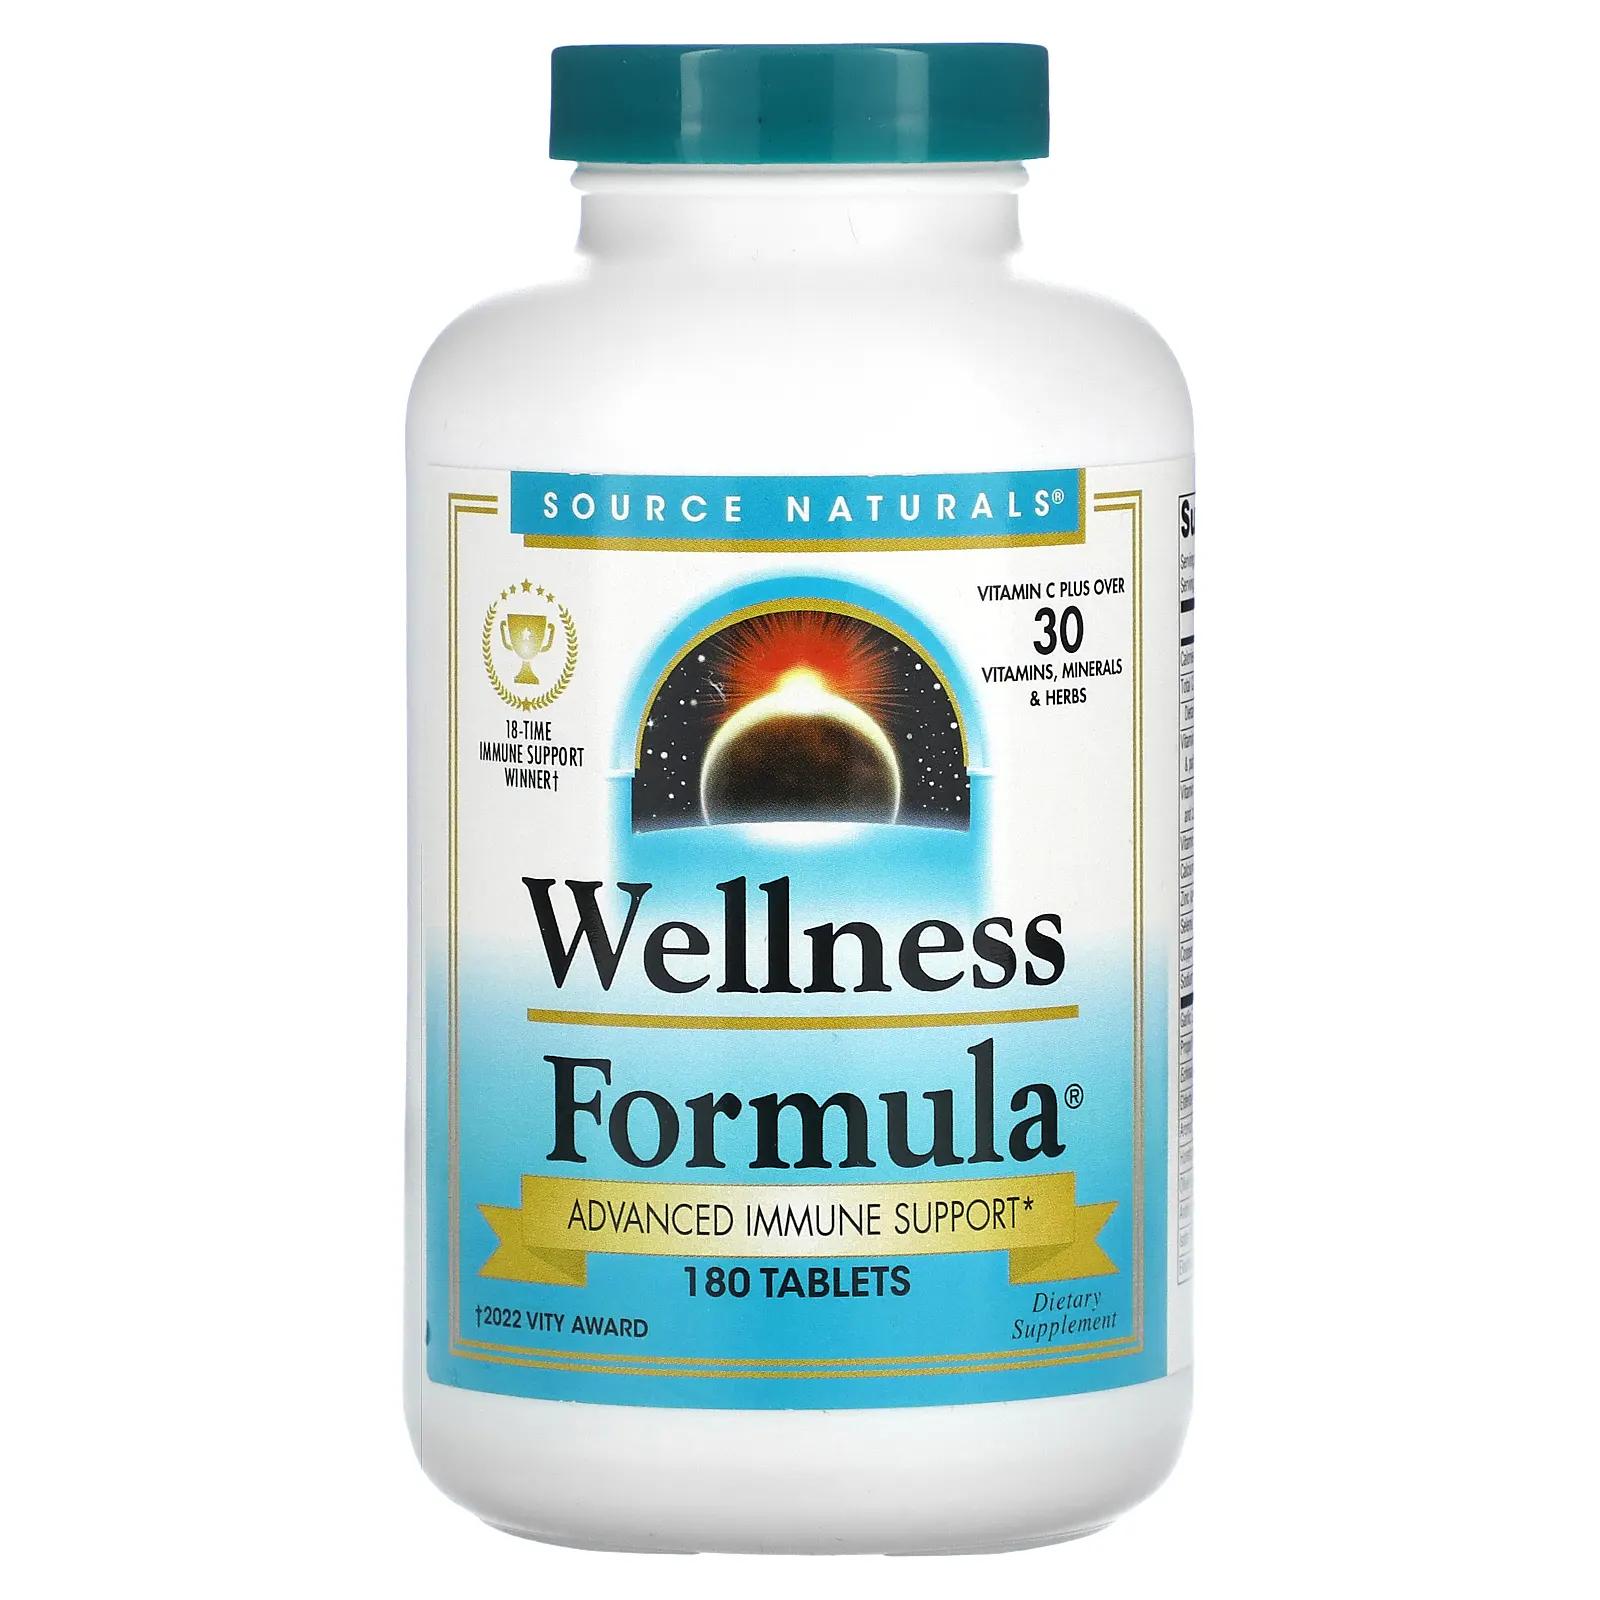 Source Naturals Wellness Formula 180 таблеток source naturals wellness formula улучшенная поддержка иммунитета 180 таблеток